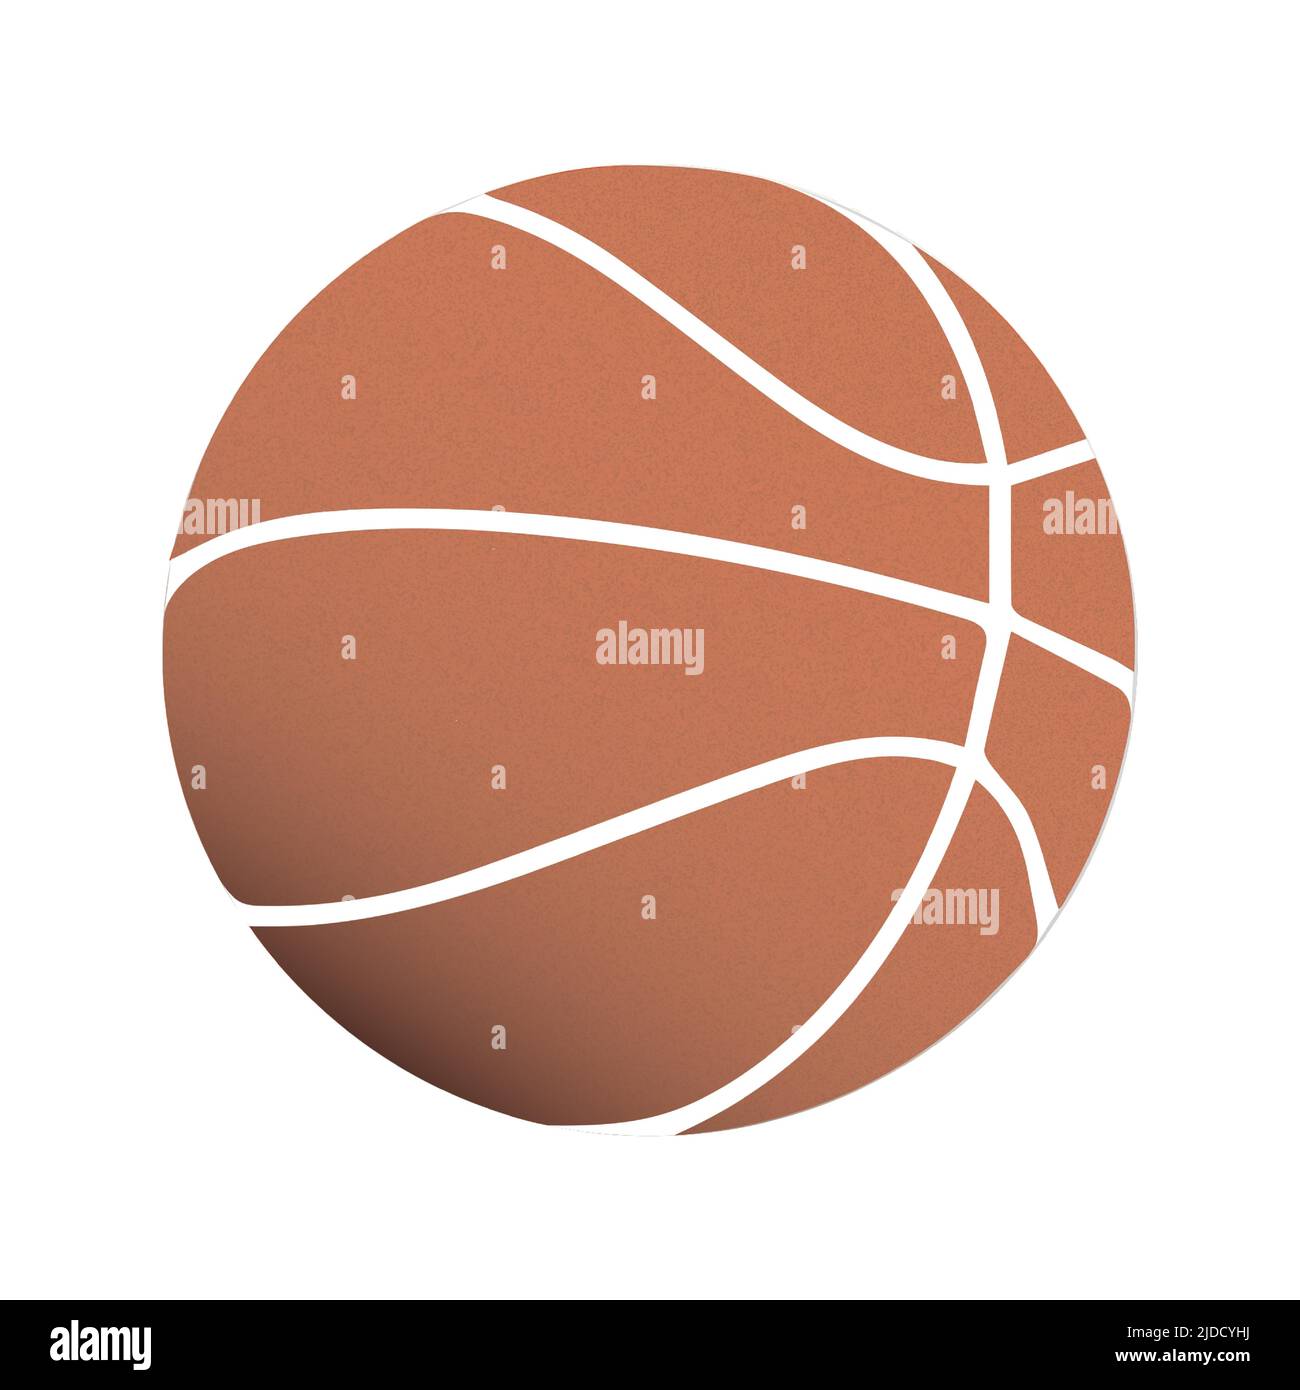 Illustrazione vettoriale di un disegno di una clipart di basket realistiche con collaring arancione. Illustrazione vettoriale Illustrazione Vettoriale